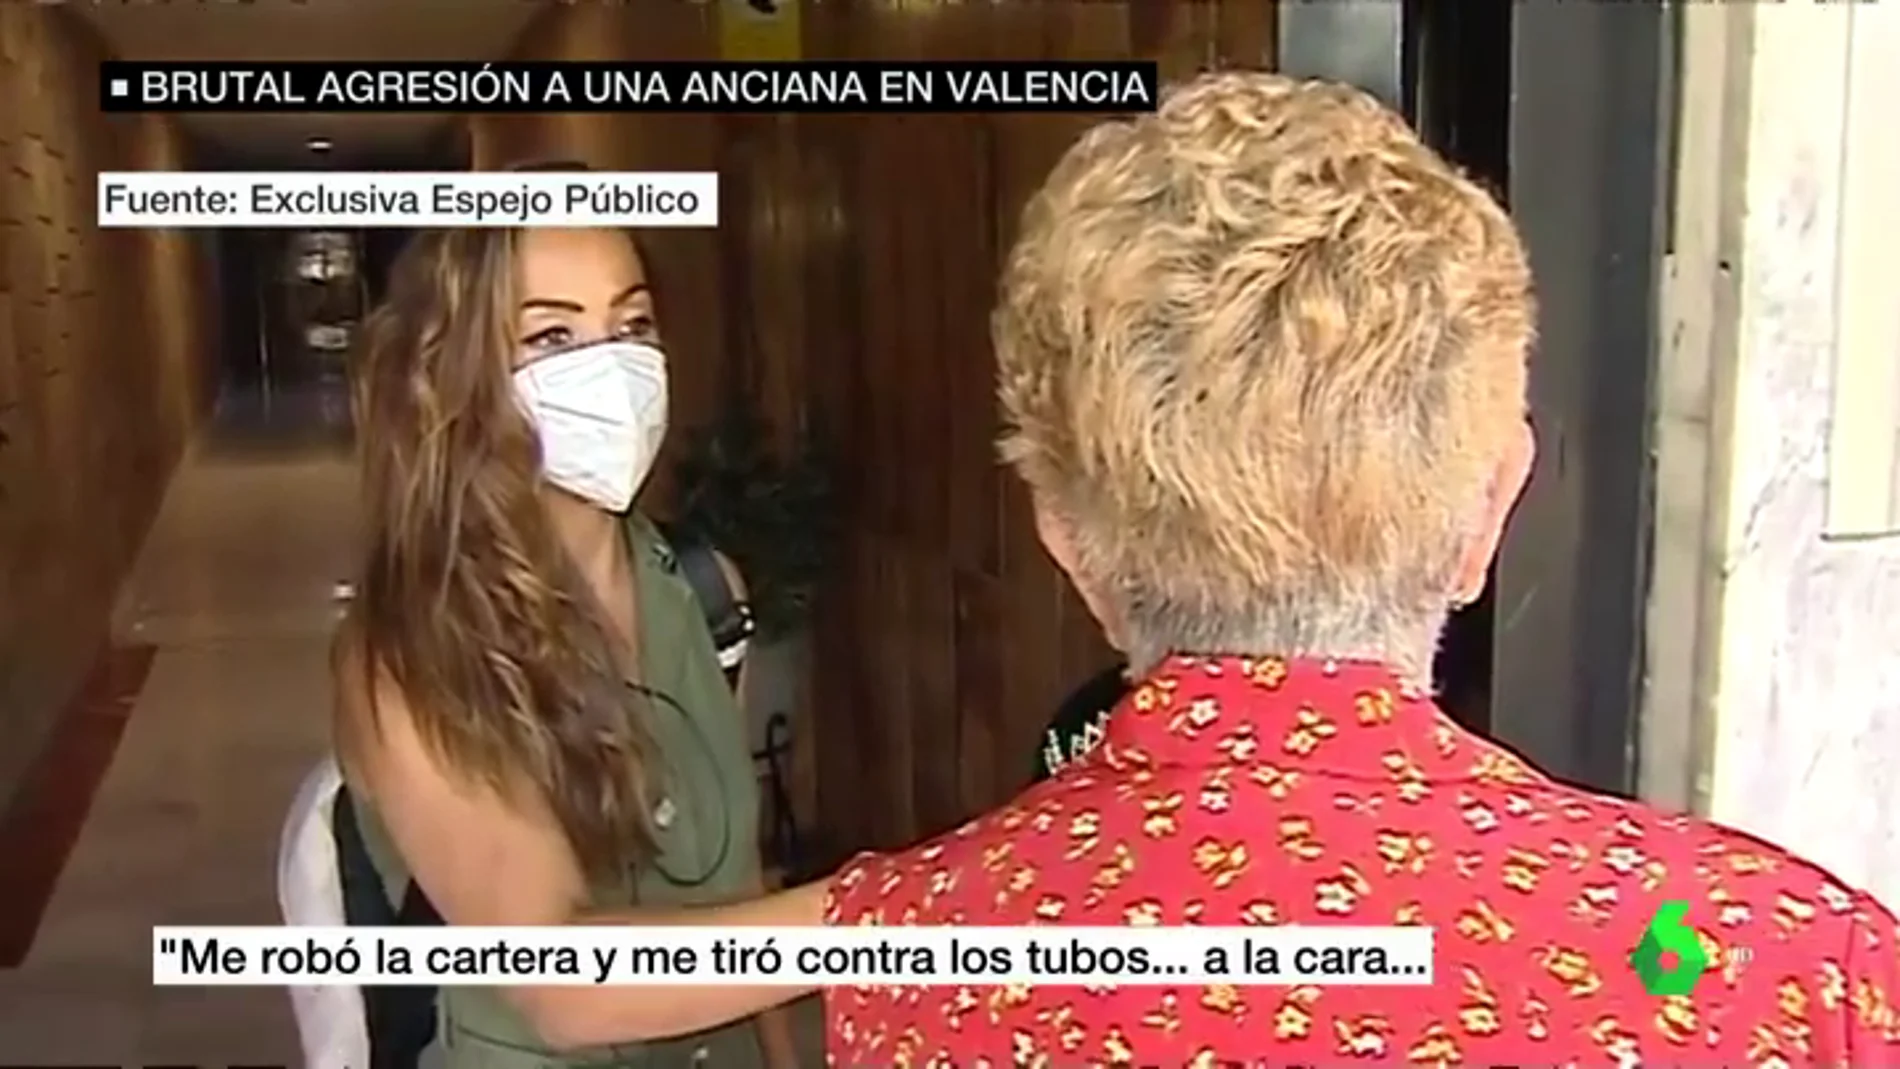 Habla la anciana agredida en su portal en Valencia: "Me robó la cartera, me tiró y empecé a sangrar"